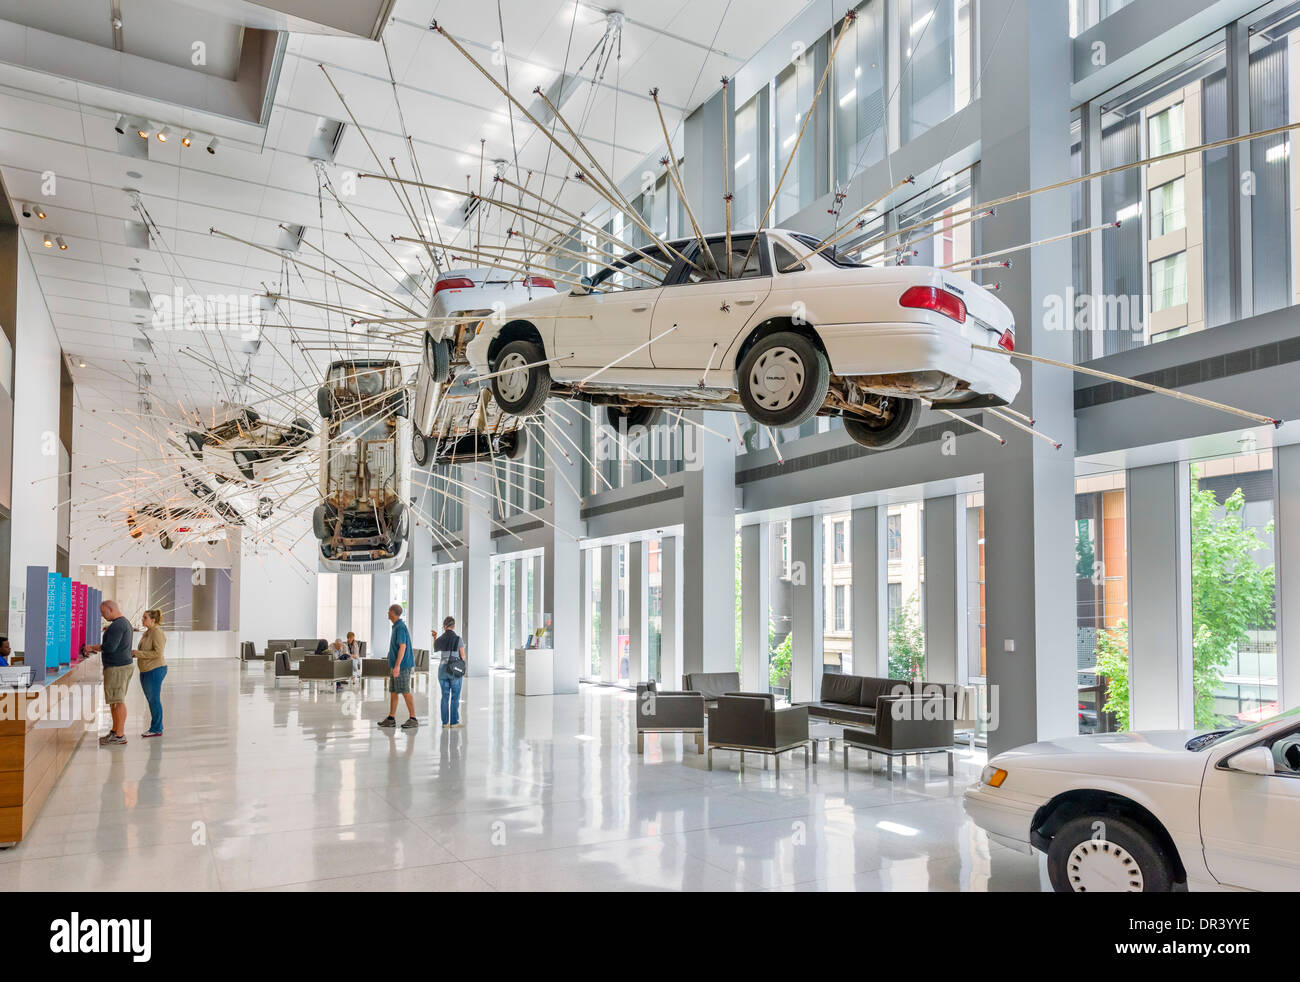 Inoportuno: primera etapa la instalación por Cai Guo-Qiang en el hall de entrada para el Museo de Arte de Seattle, Seattle, Washington, EE.UU. Foto de stock